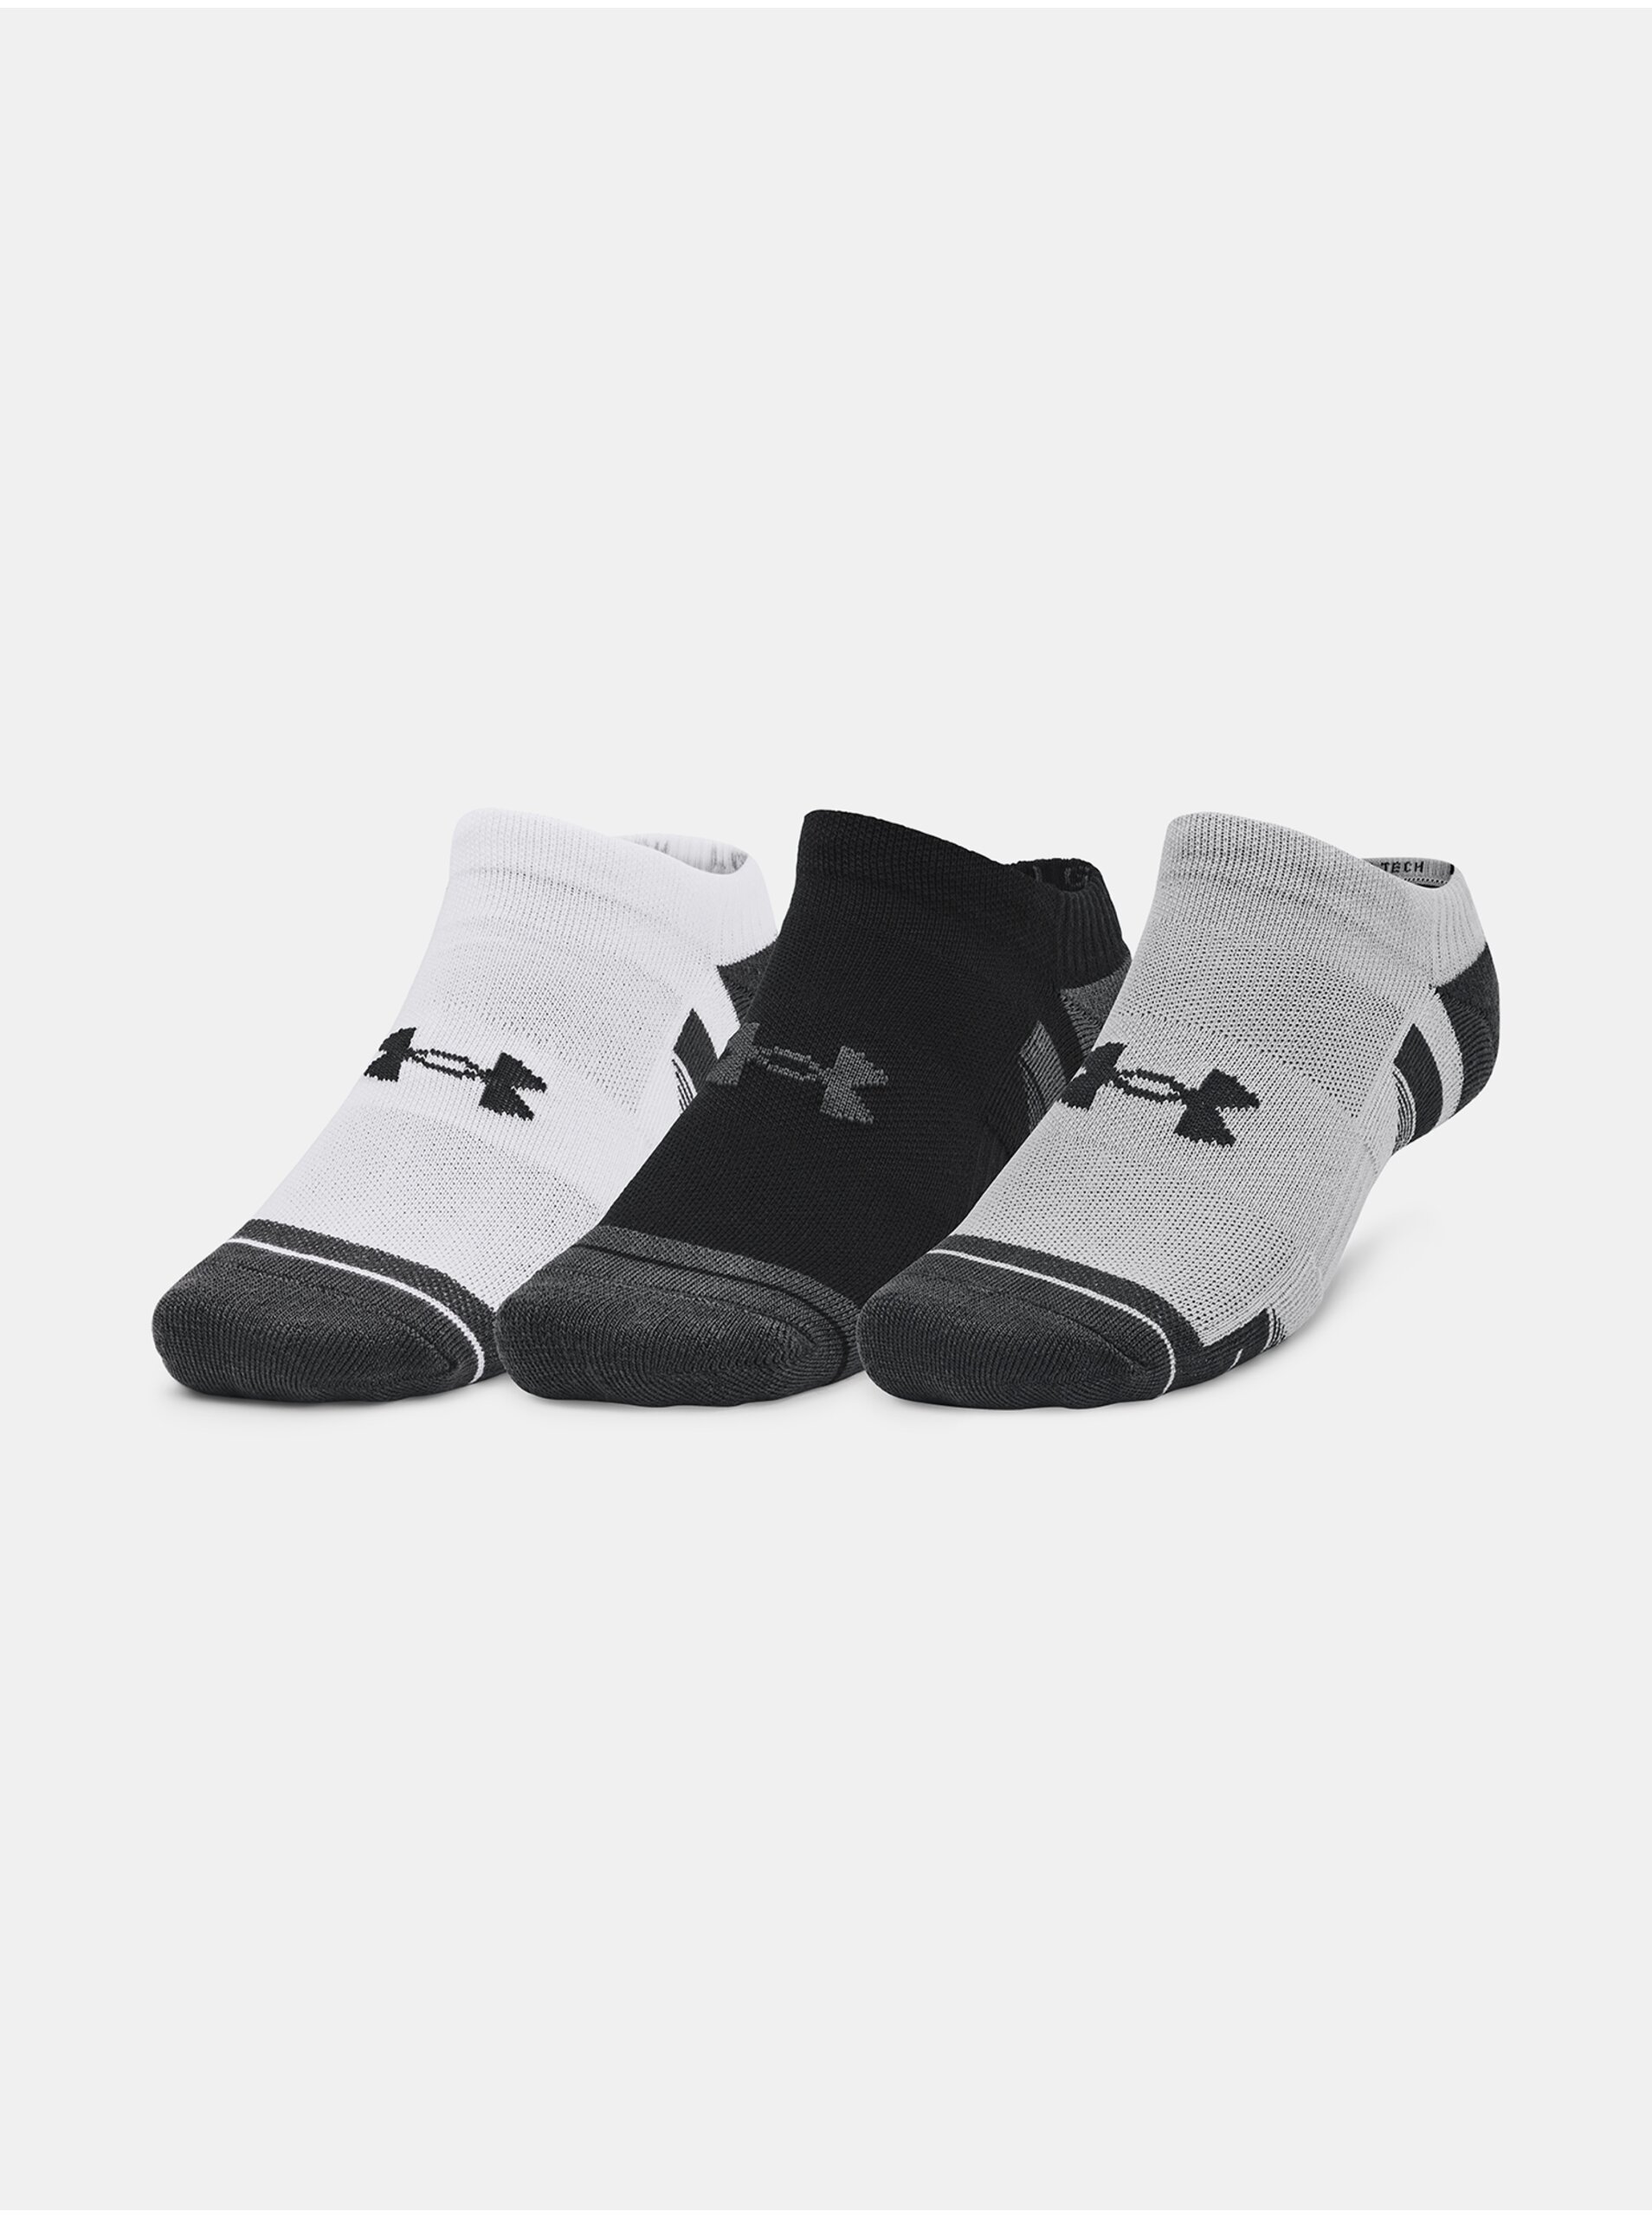 E-shop Sada tří párů unisex ponožek v bílé, černé a šedé barvě Under Armour UA Performance Tech 3pk NS